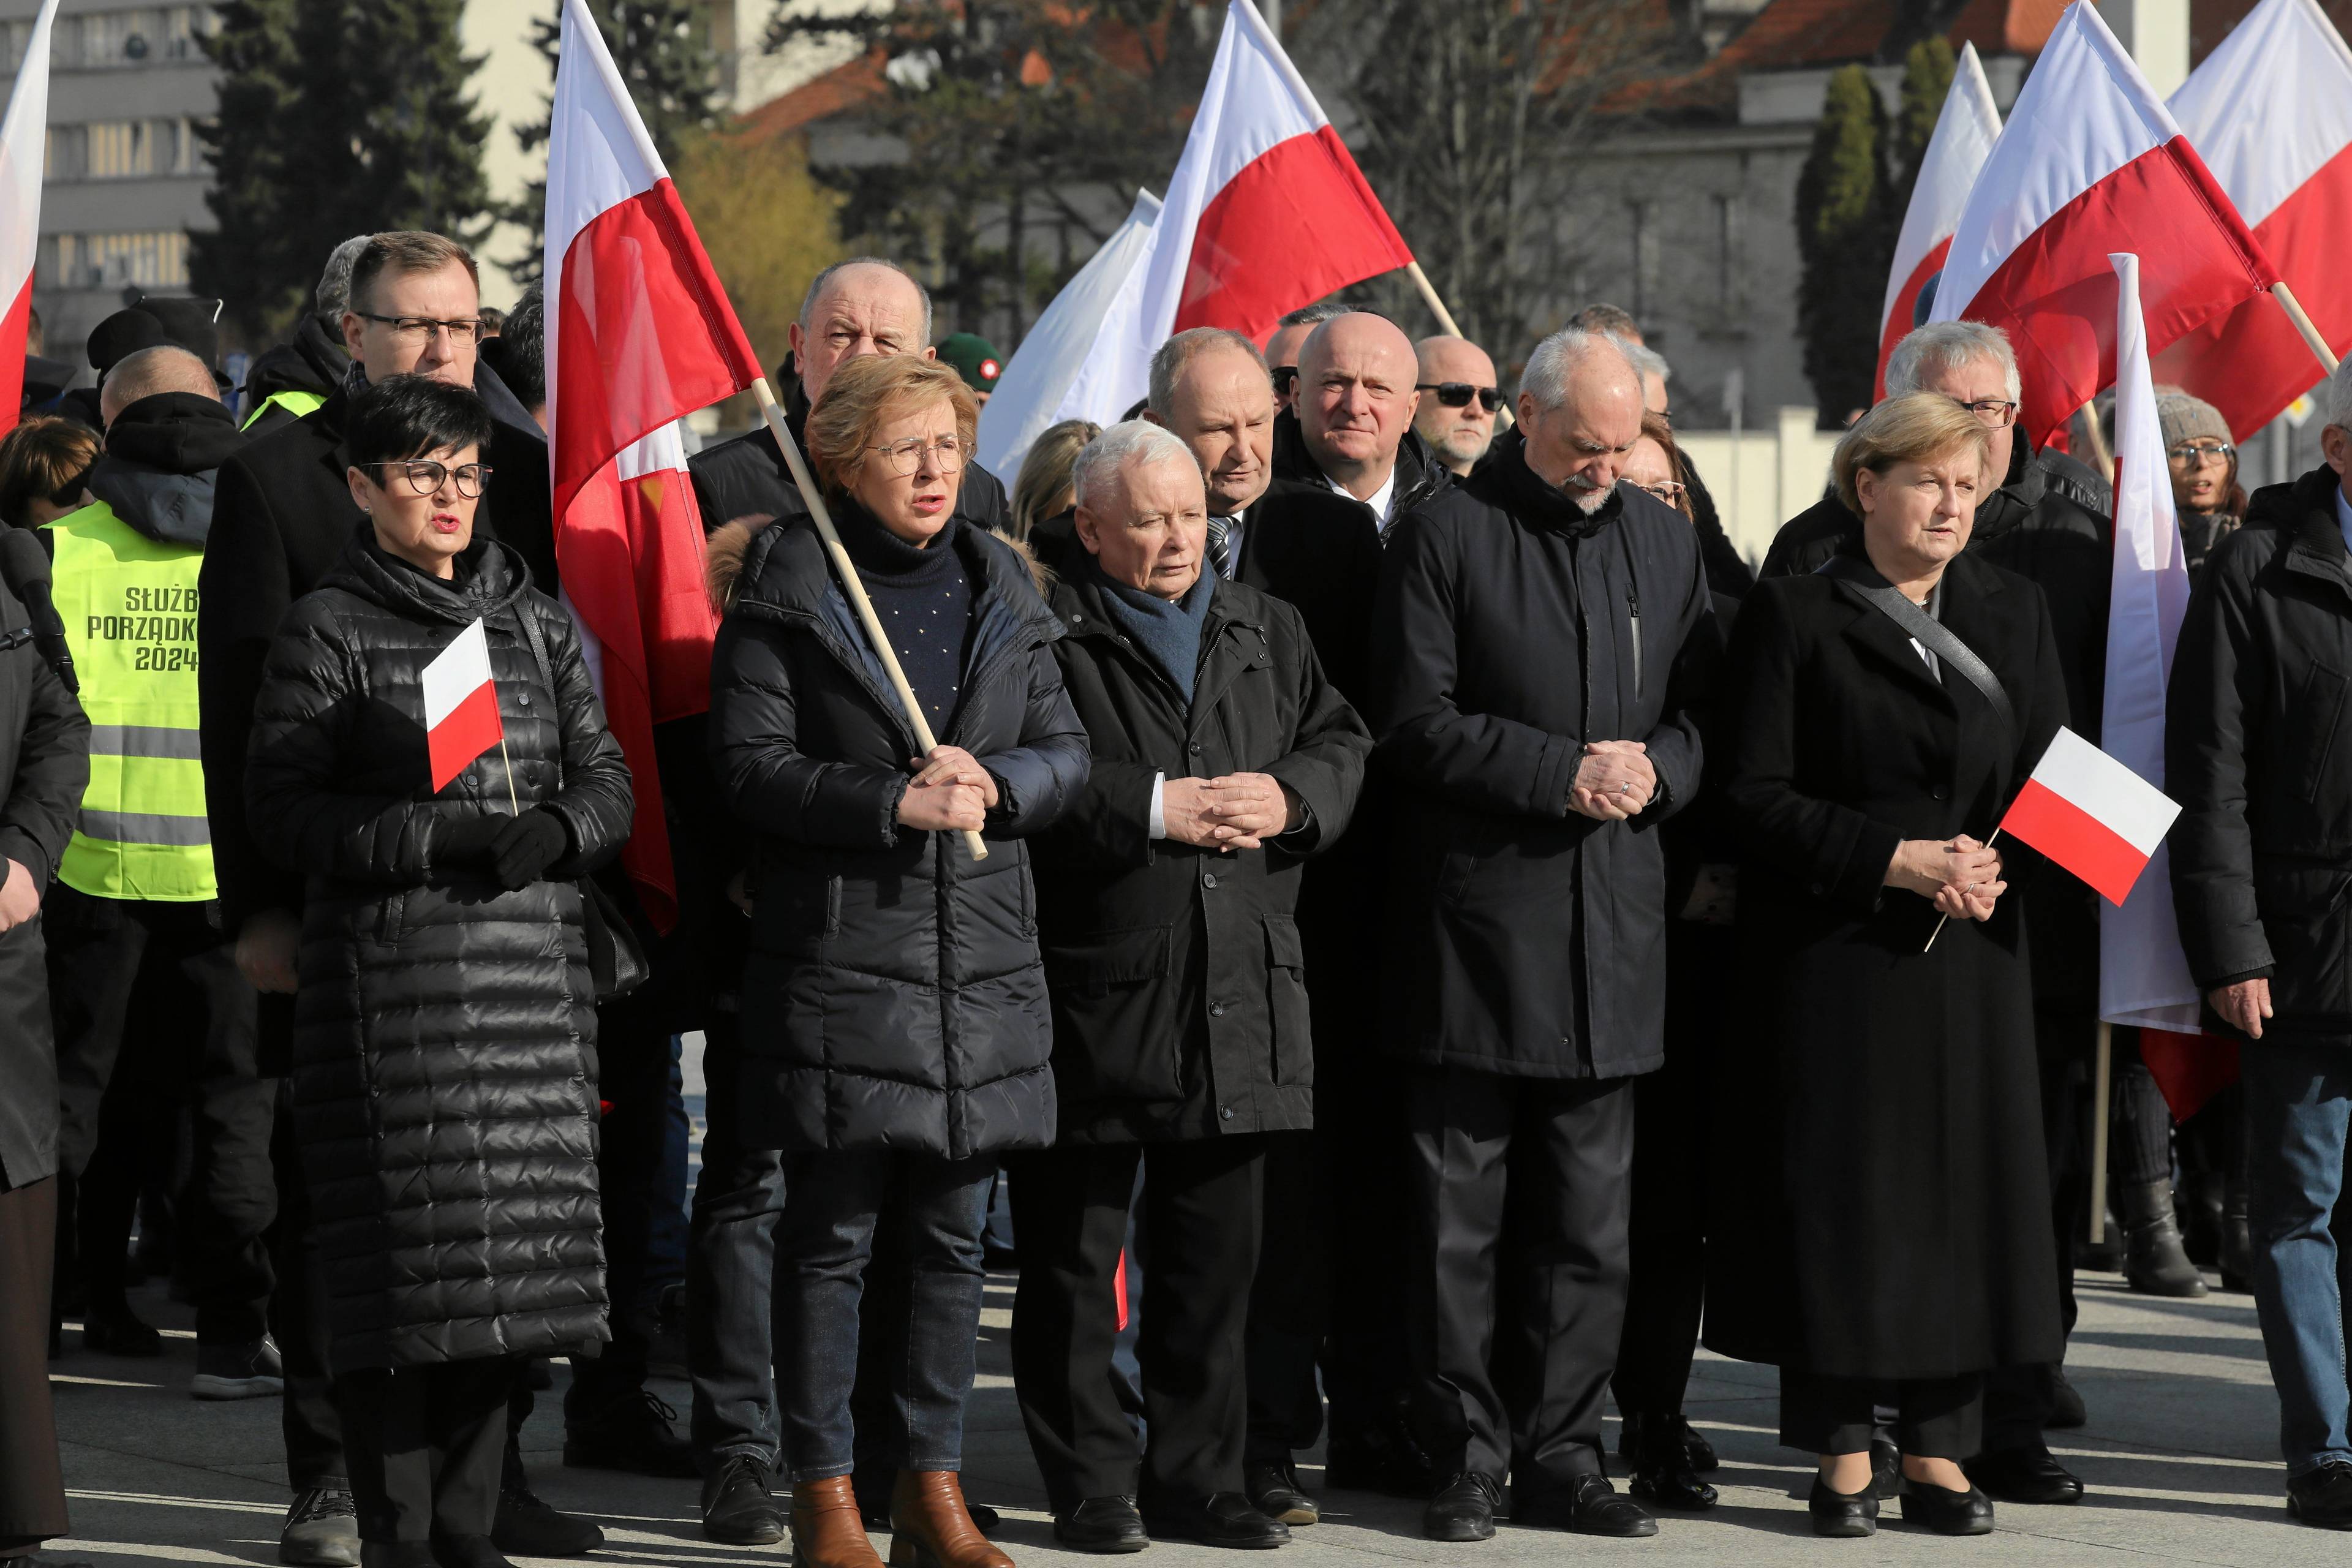 Ludzie z białoczerwonymi flagami i w czarnych kurtkach. W środku - Jarosław Kaczyński